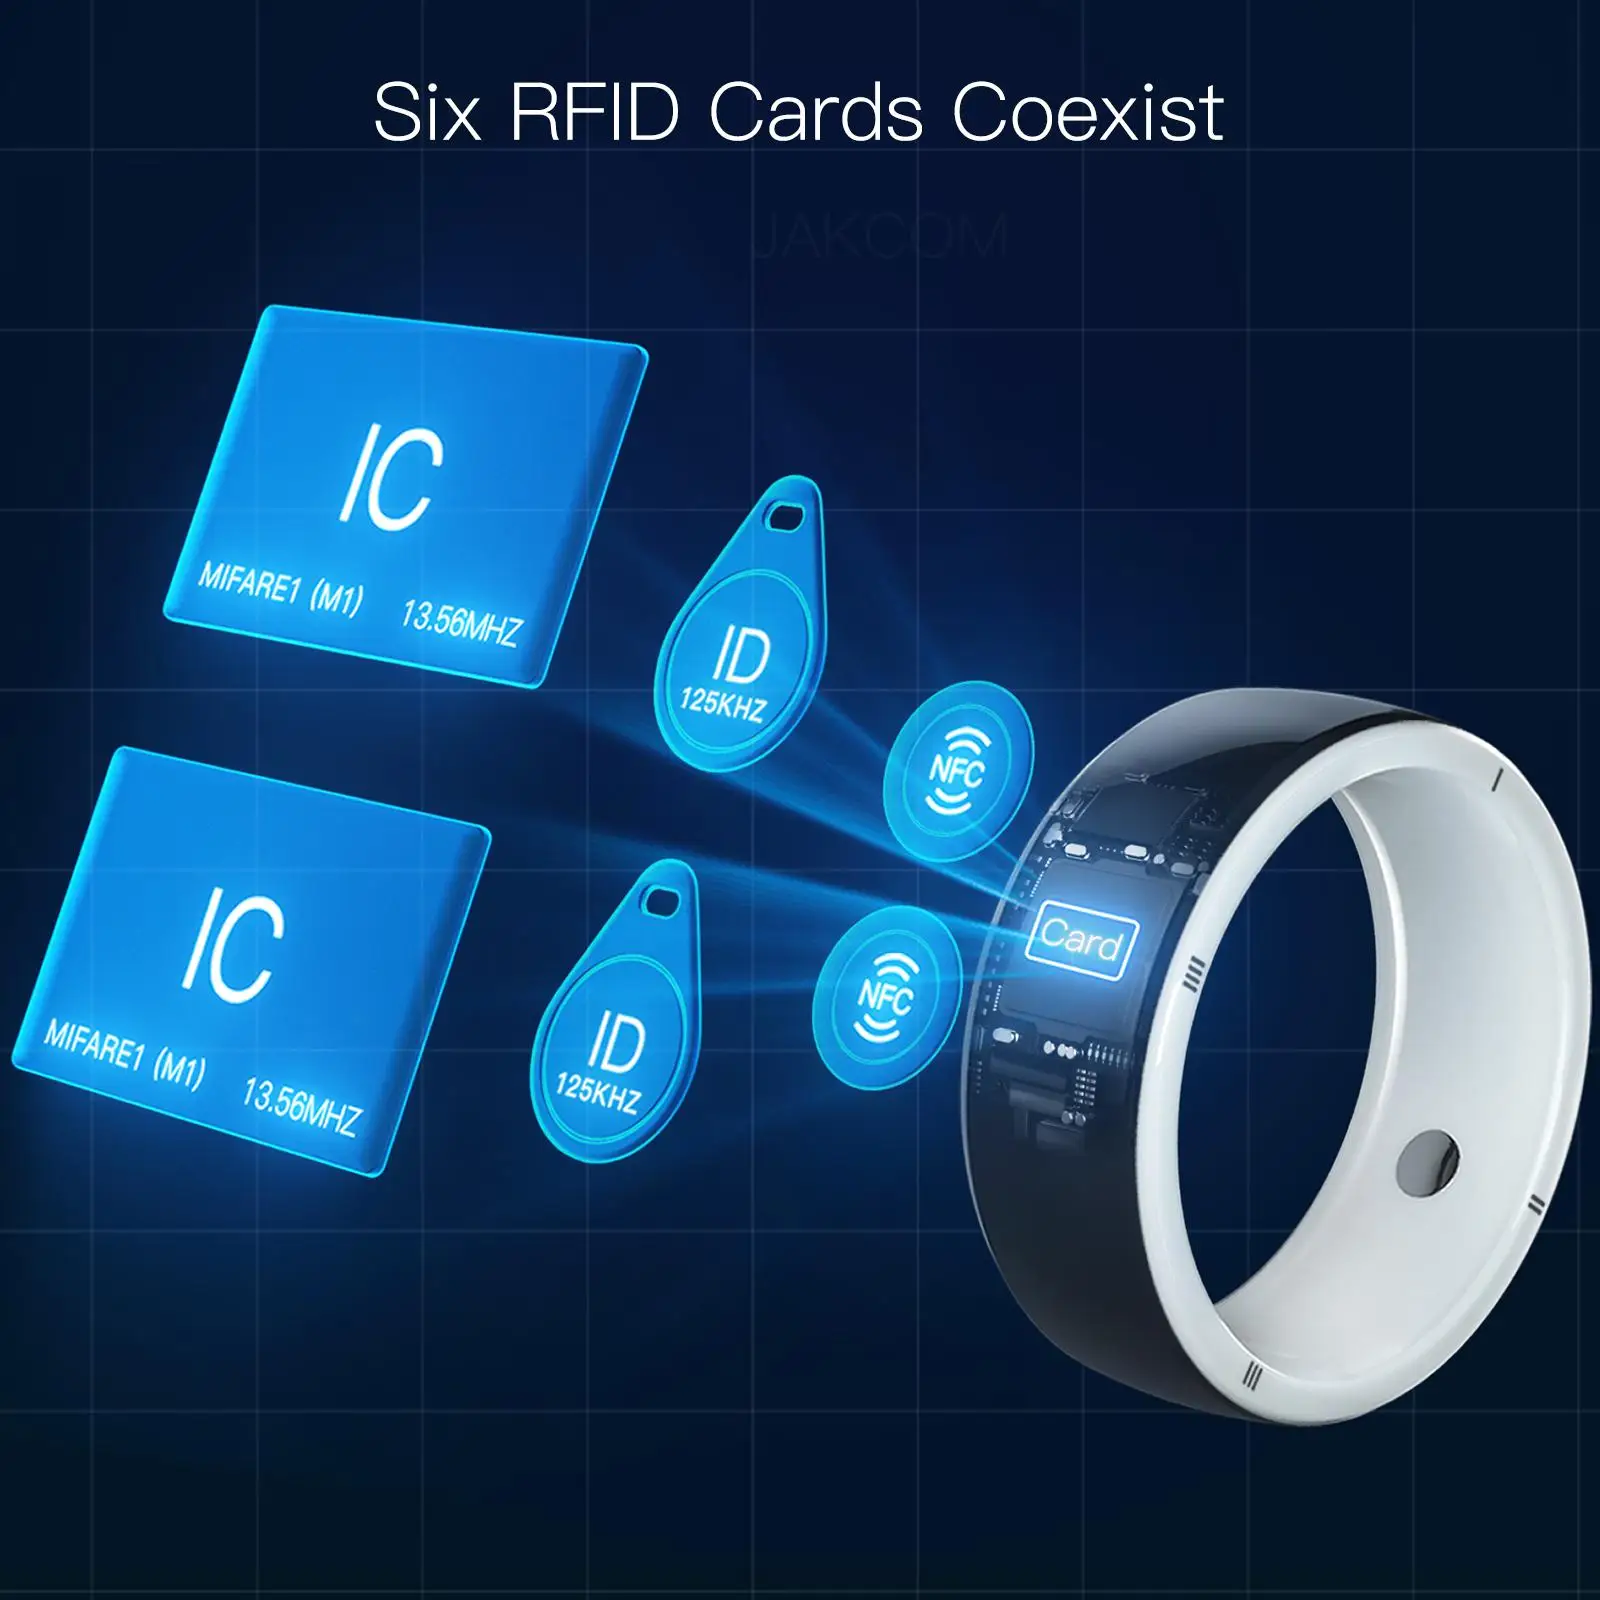 JAKCOM R5 Smart Ring Новое поступление в качестве абонента prime video франция rfid наклейка водная двухчиповая бирка nfc адаптер sleutel копия